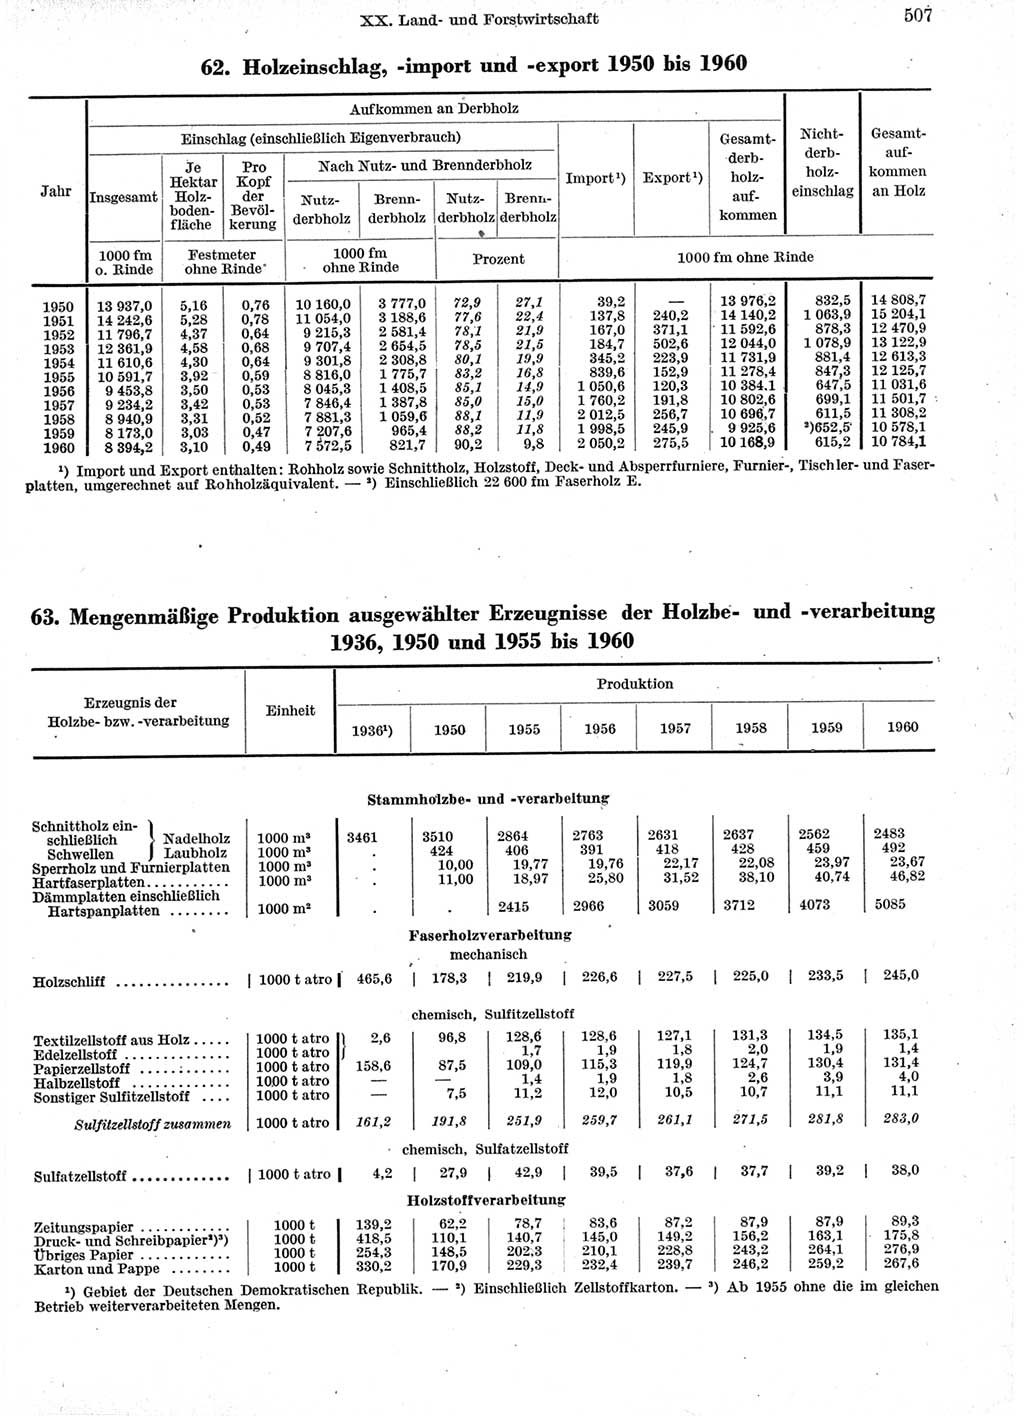 Statistisches Jahrbuch der Deutschen Demokratischen Republik (DDR) 1960-1961, Seite 507 (Stat. Jb. DDR 1960-1961, S. 507)